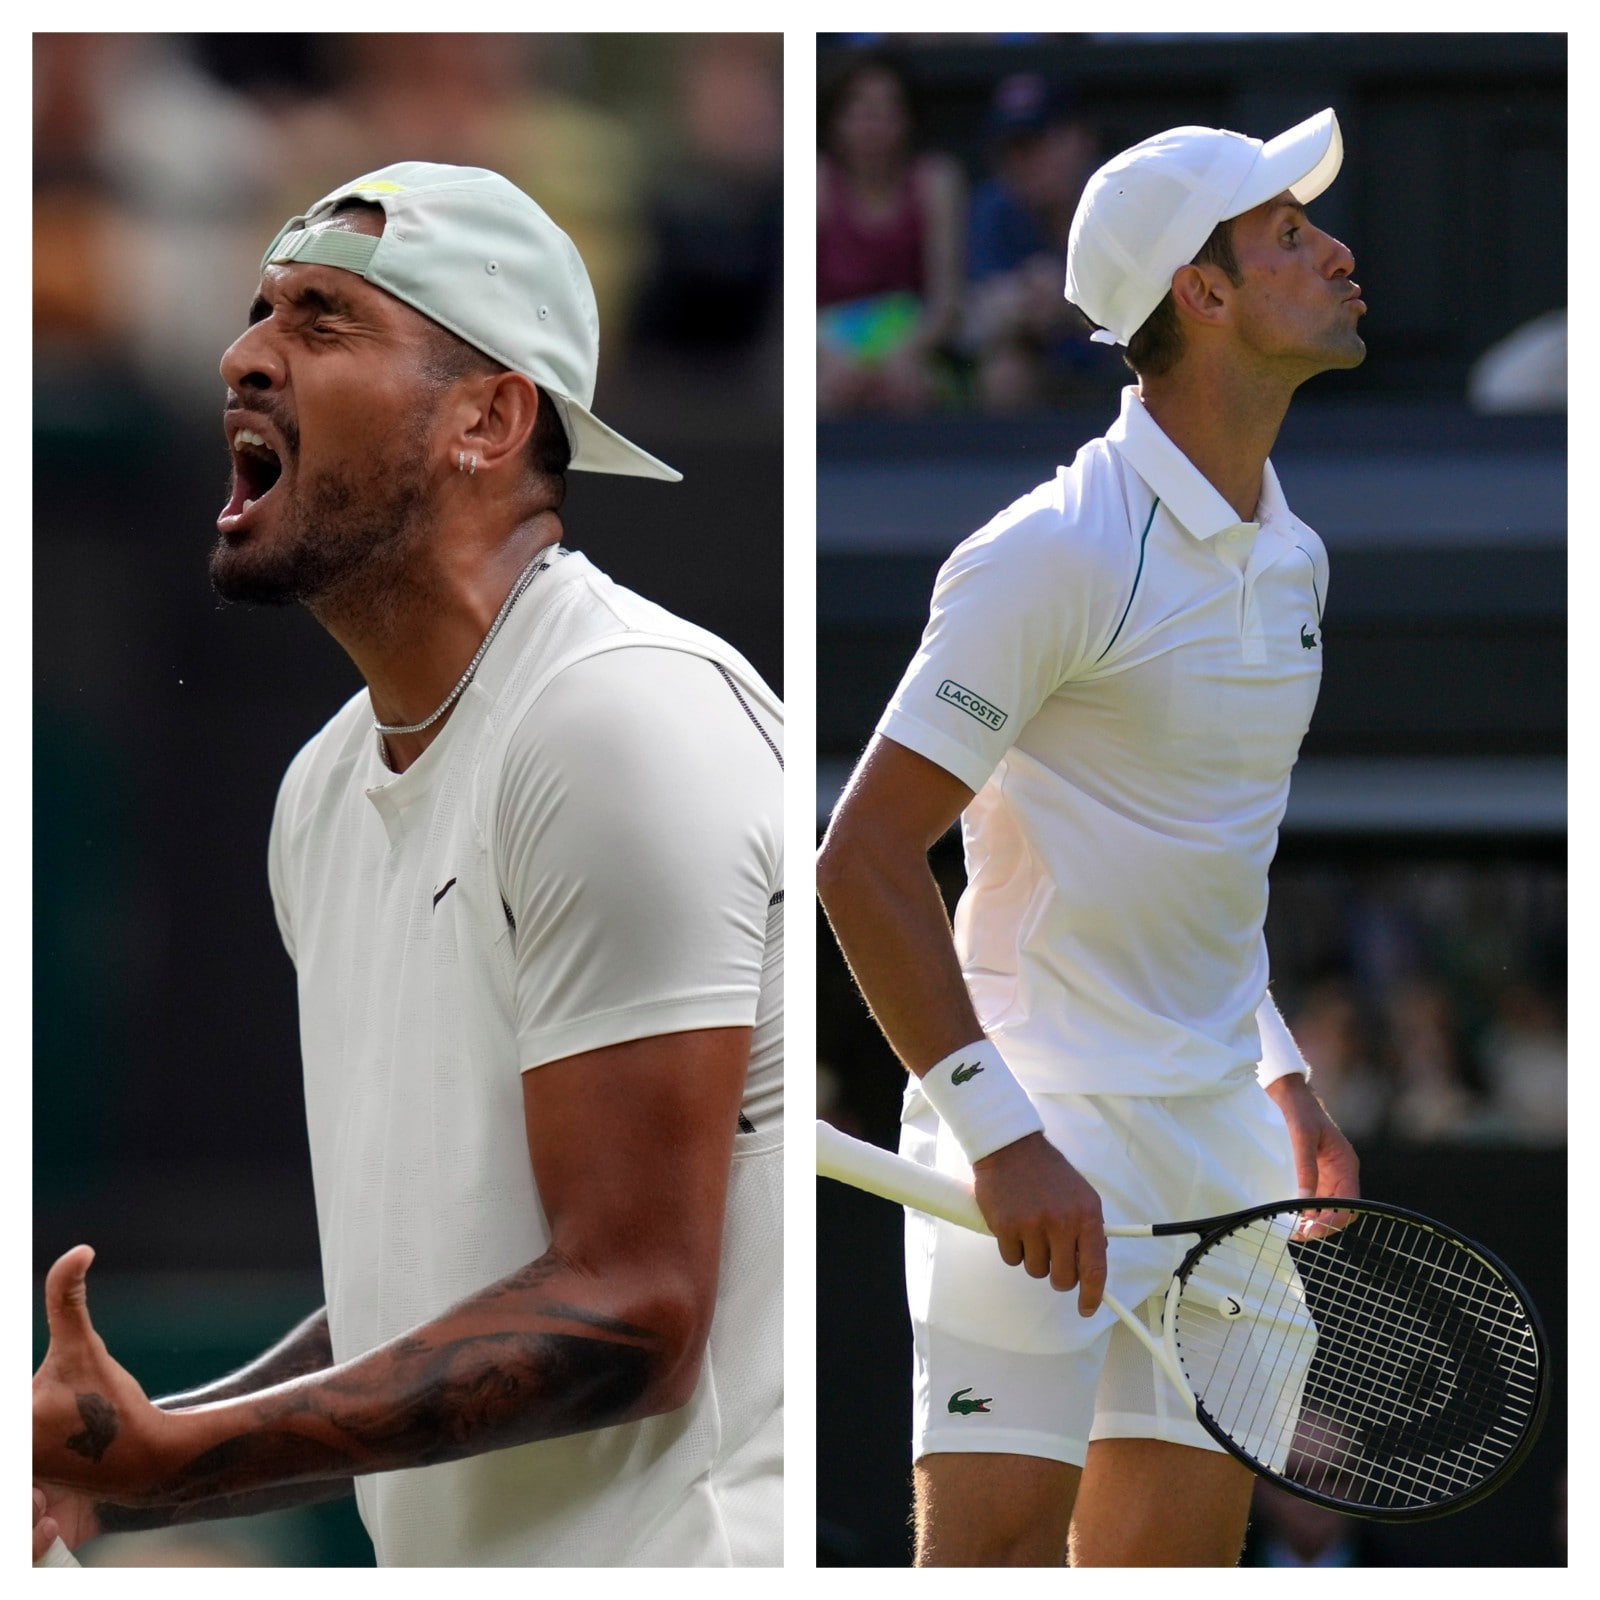 Wimbledon 2022 Final Highlights Novak Djokovic Beats Nick Kyrgios 4-6, 6-3, 6-4 7-6